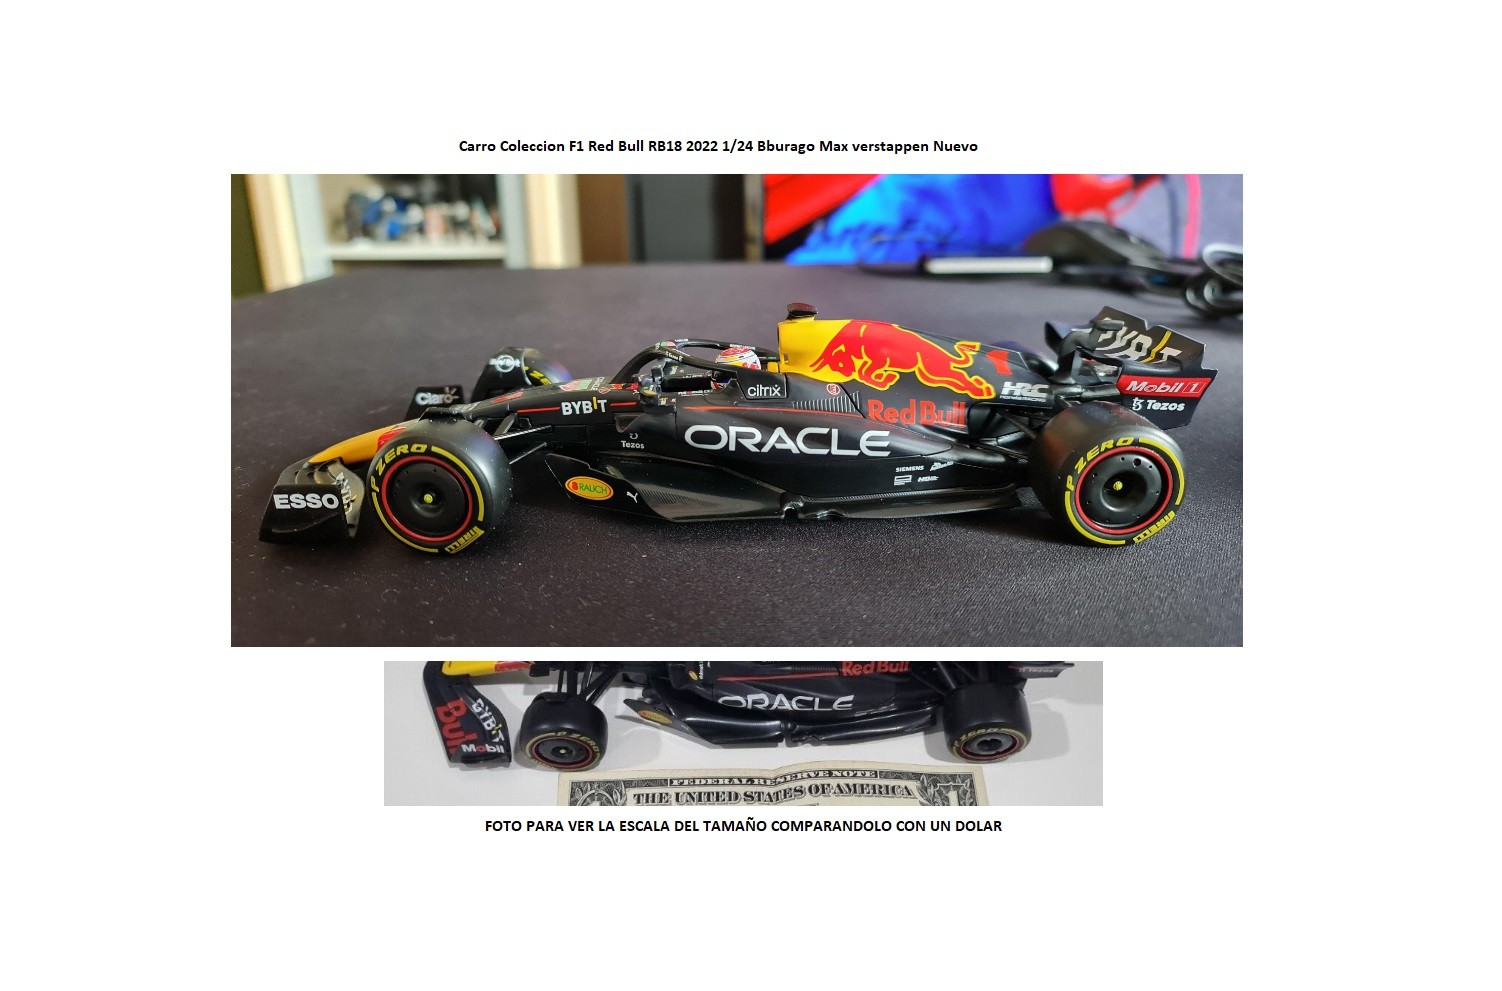 hobby y coleccion - Carro Coleccion F1 Red Bull RB18 2022 1/24 Bburago Max verstappen Nuevo